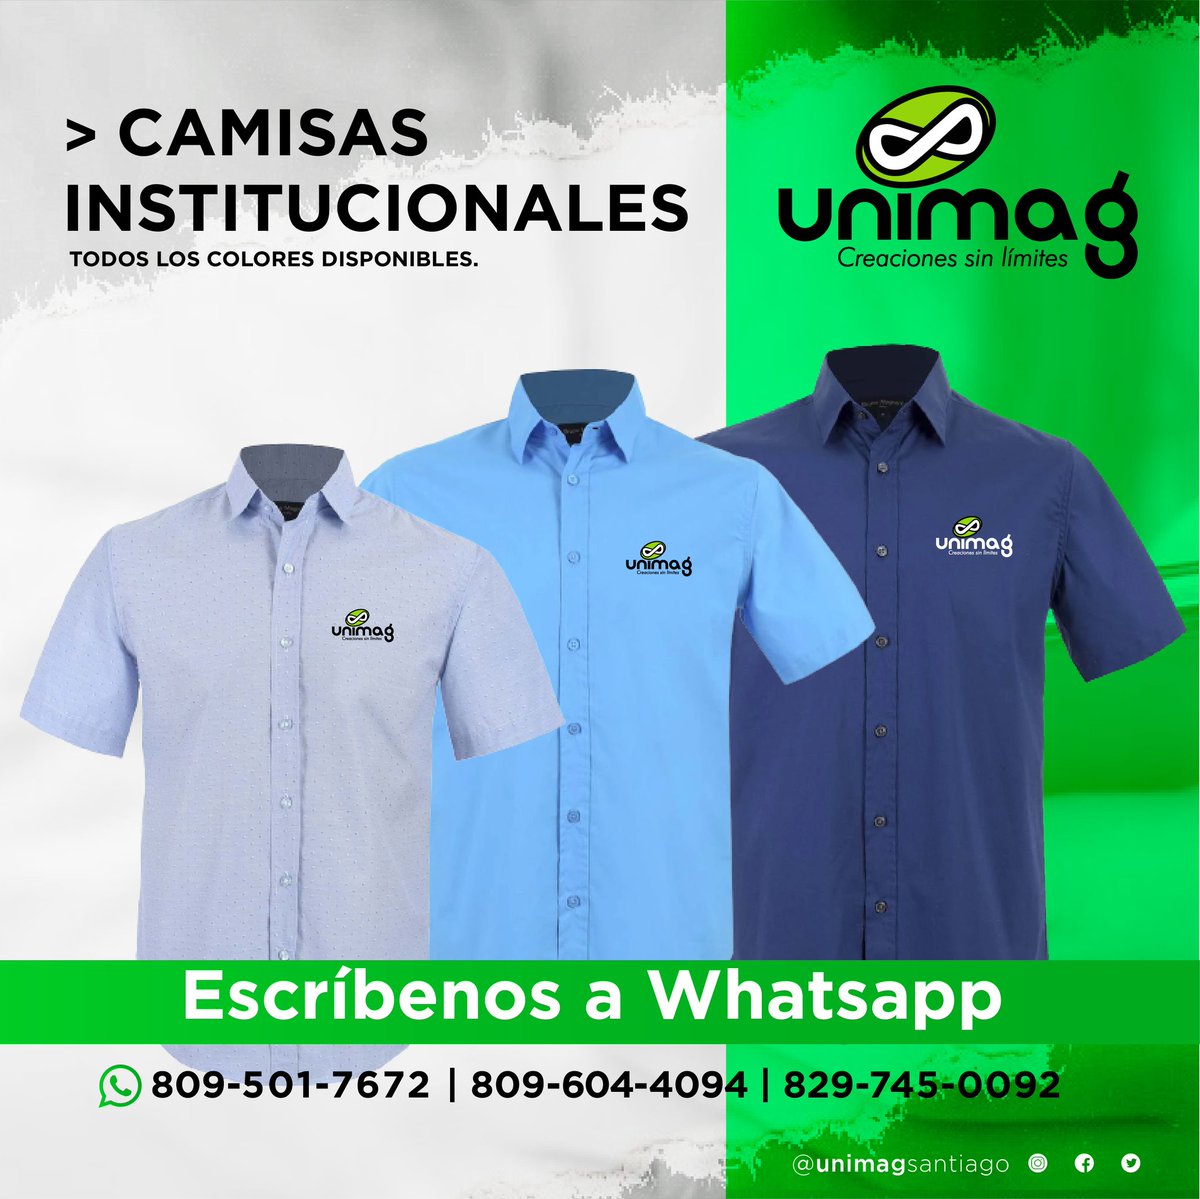 UnimagSantiago on Twitter: "Creamos todo tipo camisas Institucionales. . . . Unimag | C/ Independecia Santiago, R.D. Telfs.: 809.724.9746 | 809.241.2858 unimagventas@gmail.com https://t.co/UeRui5uUBD https://t.co/FKafKOUqAN" / Twitter